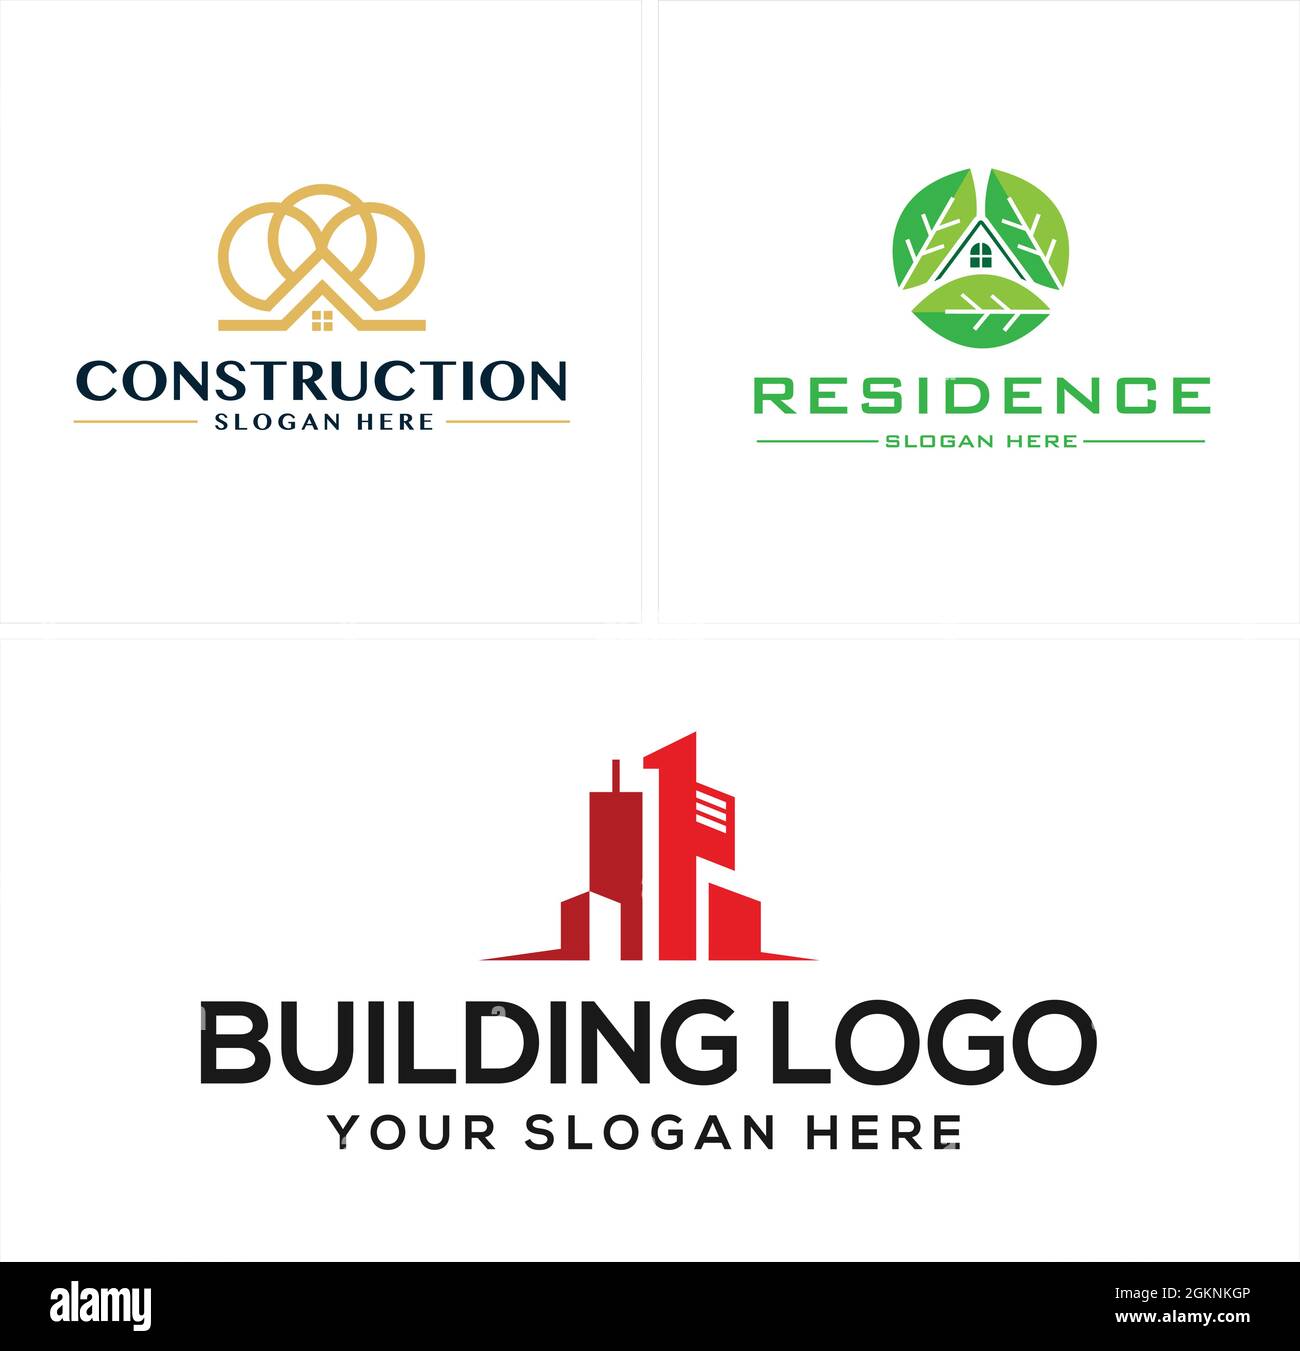 Costruzione immobiliare residenza eco friendly logo design Illustrazione Vettoriale